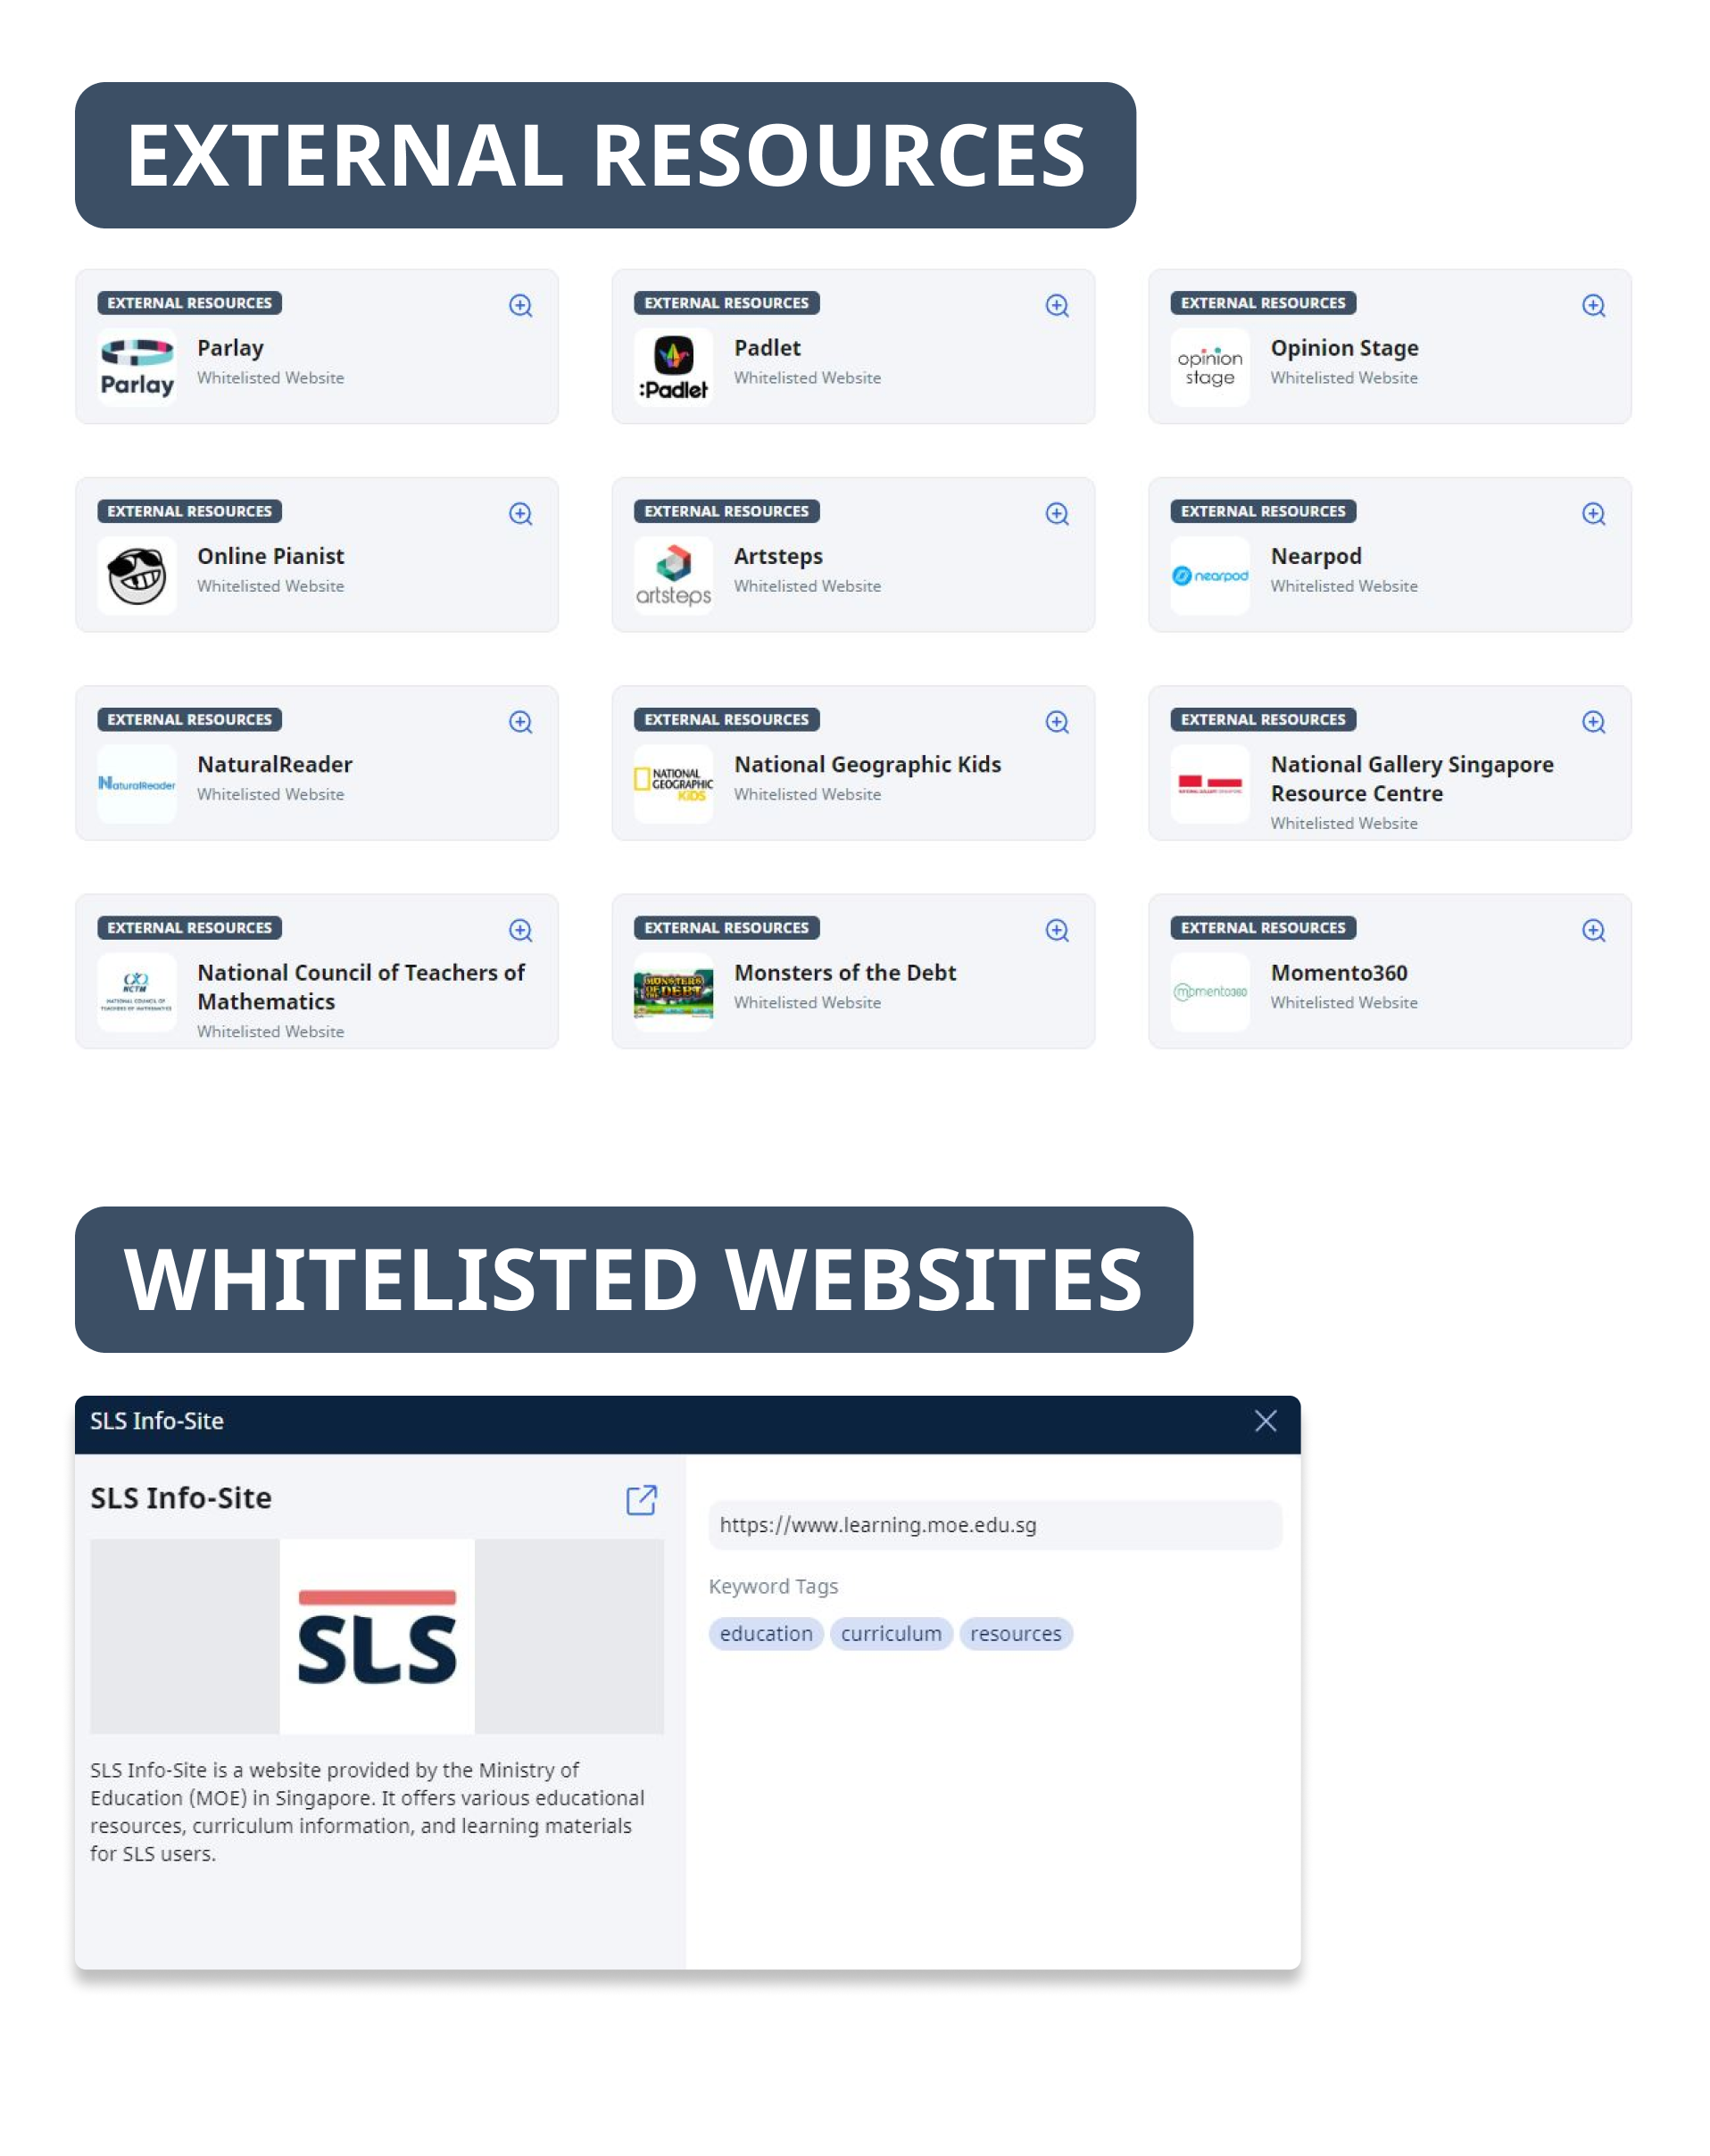 Whitelisted websites